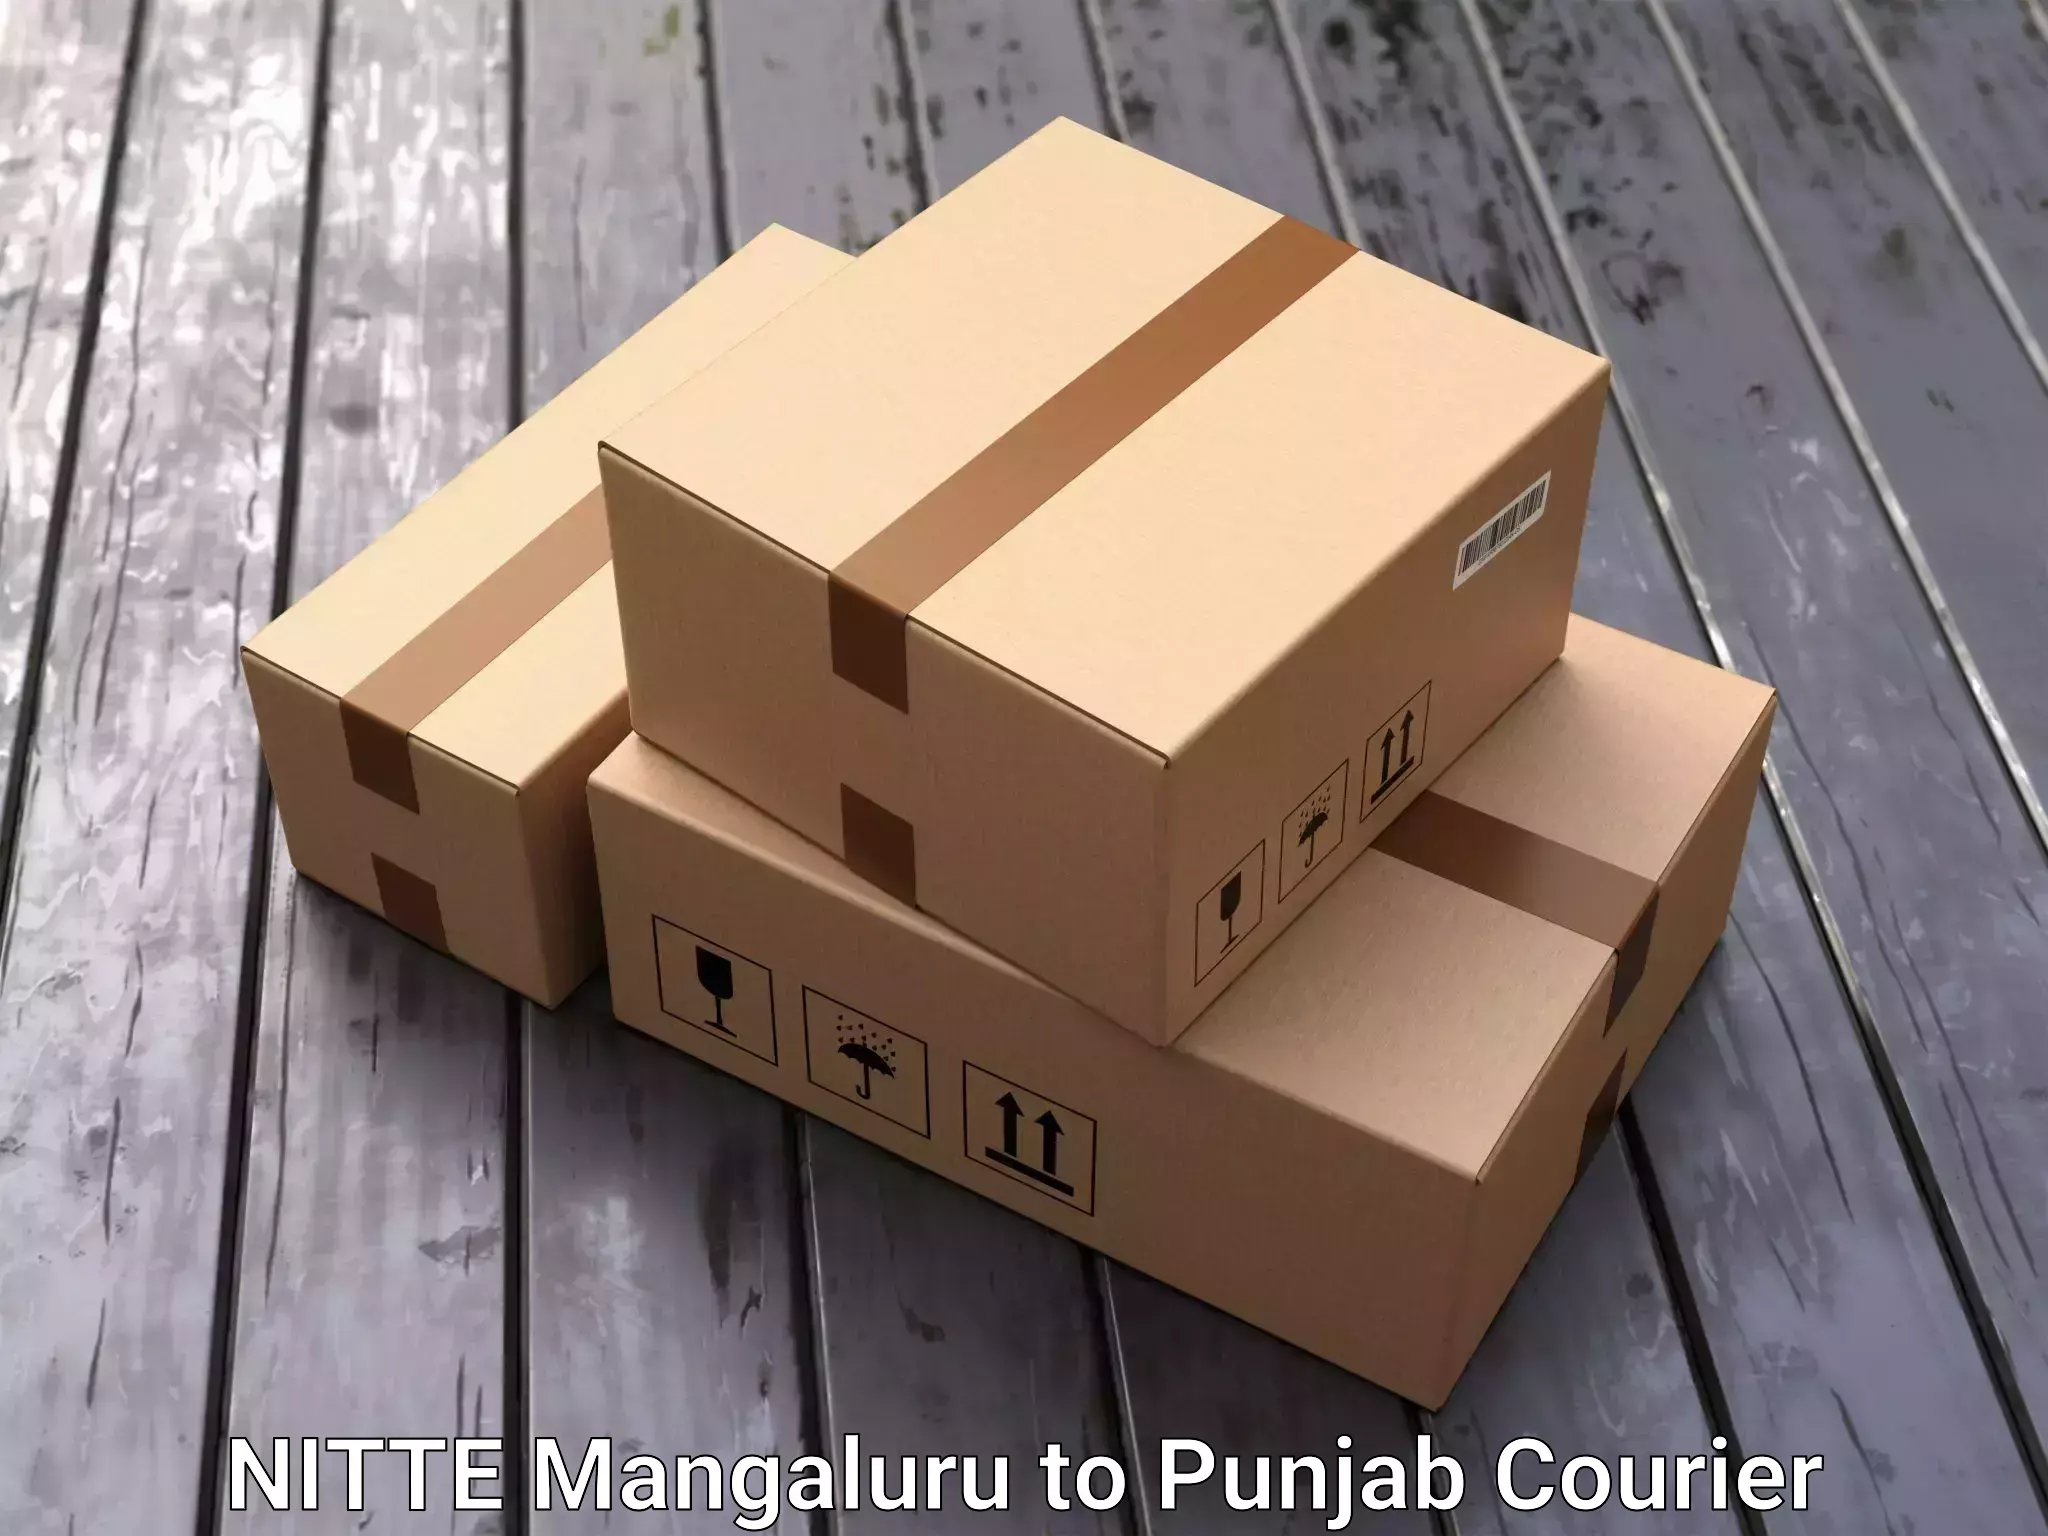 Personalized moving plans NITTE Mangaluru to Punjab